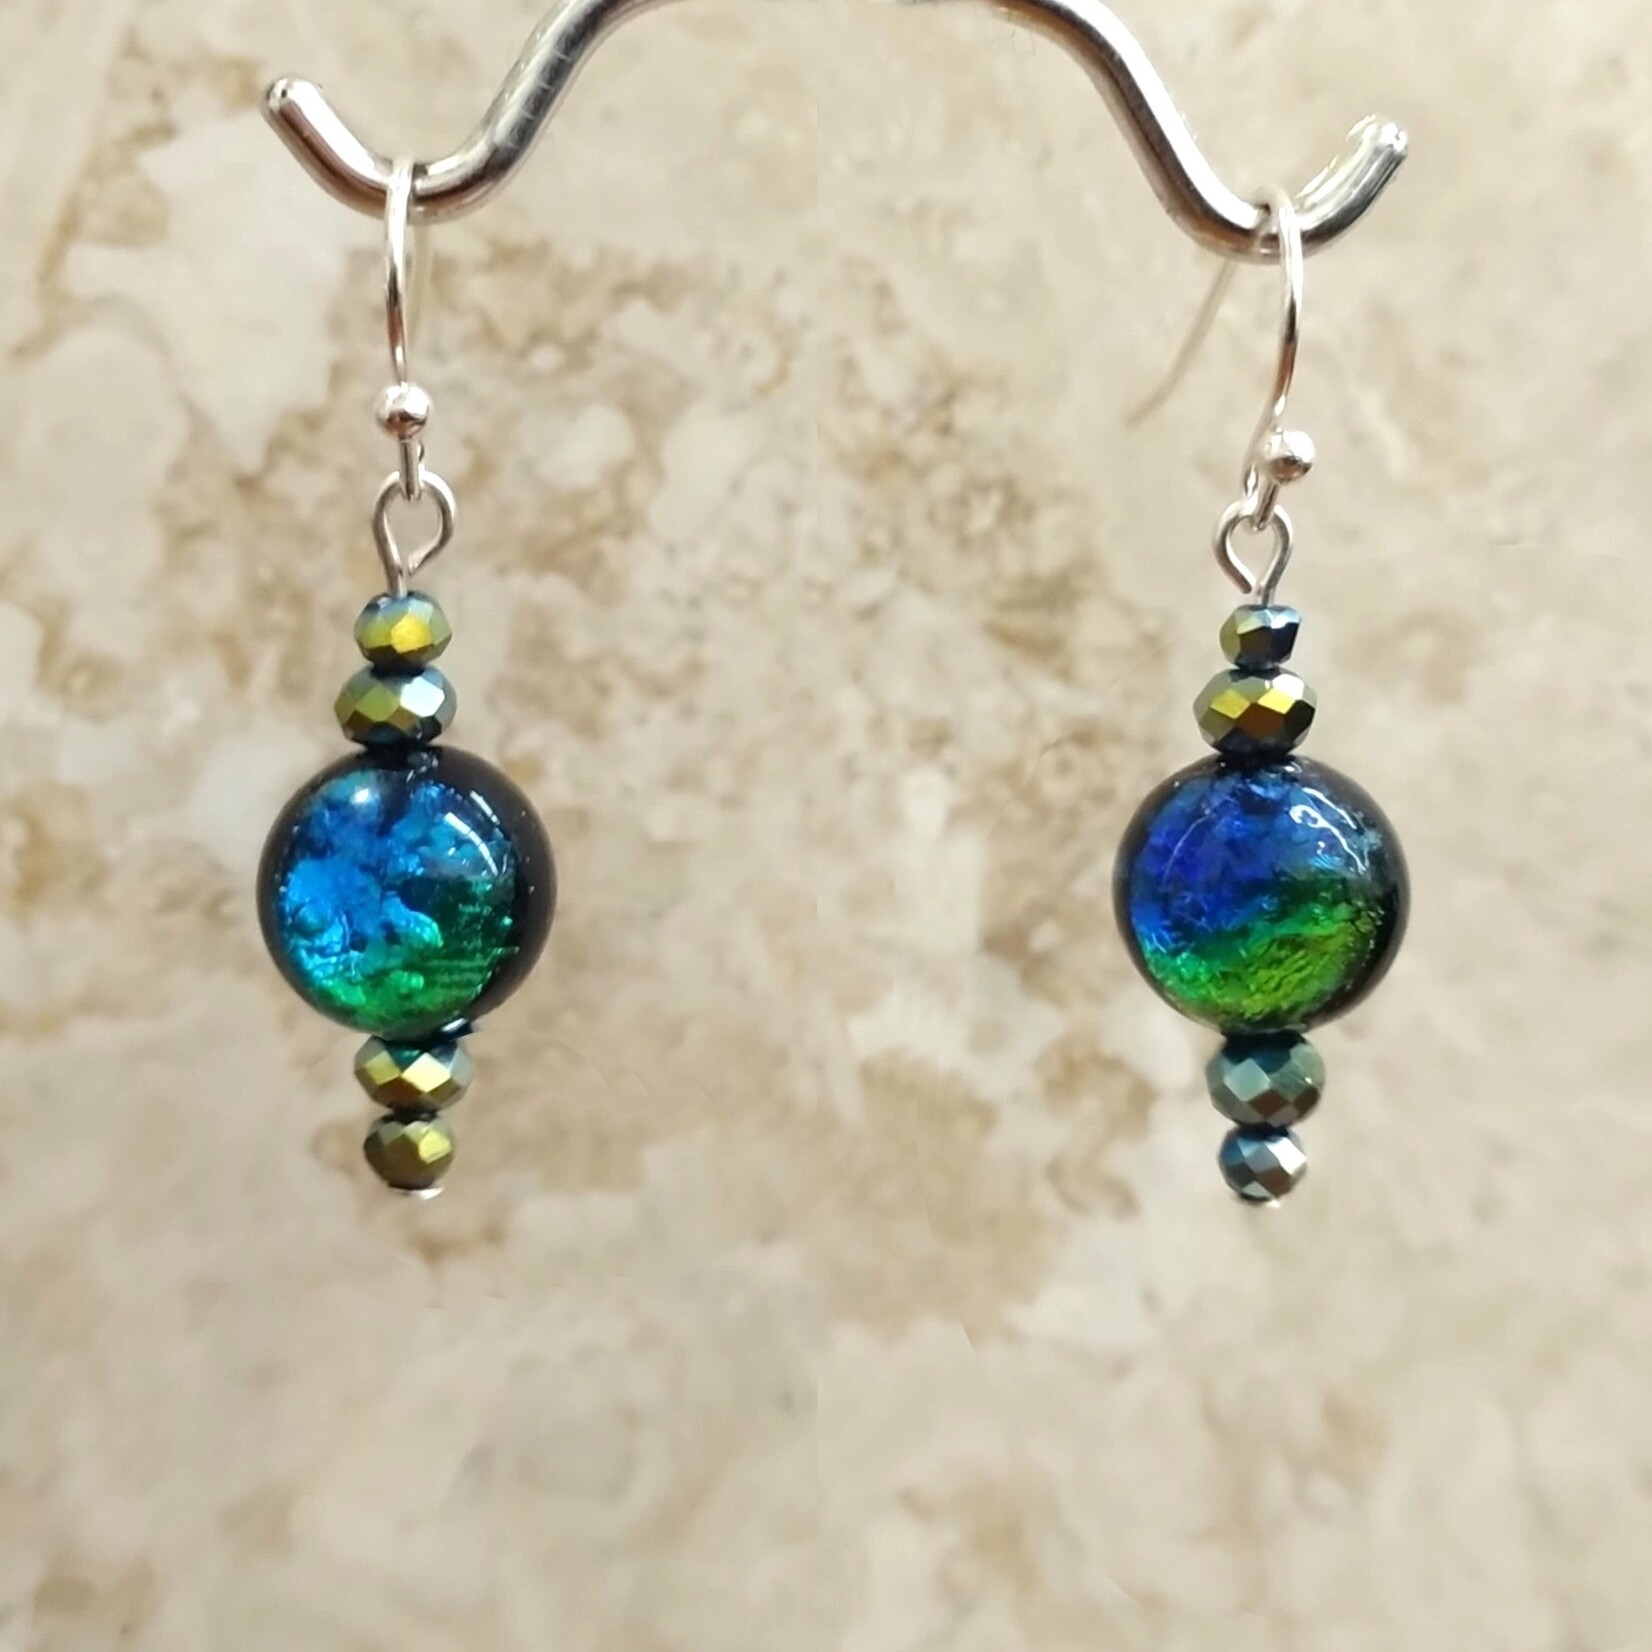 Blue/Green Dichroic Earrings - Ready to Wear